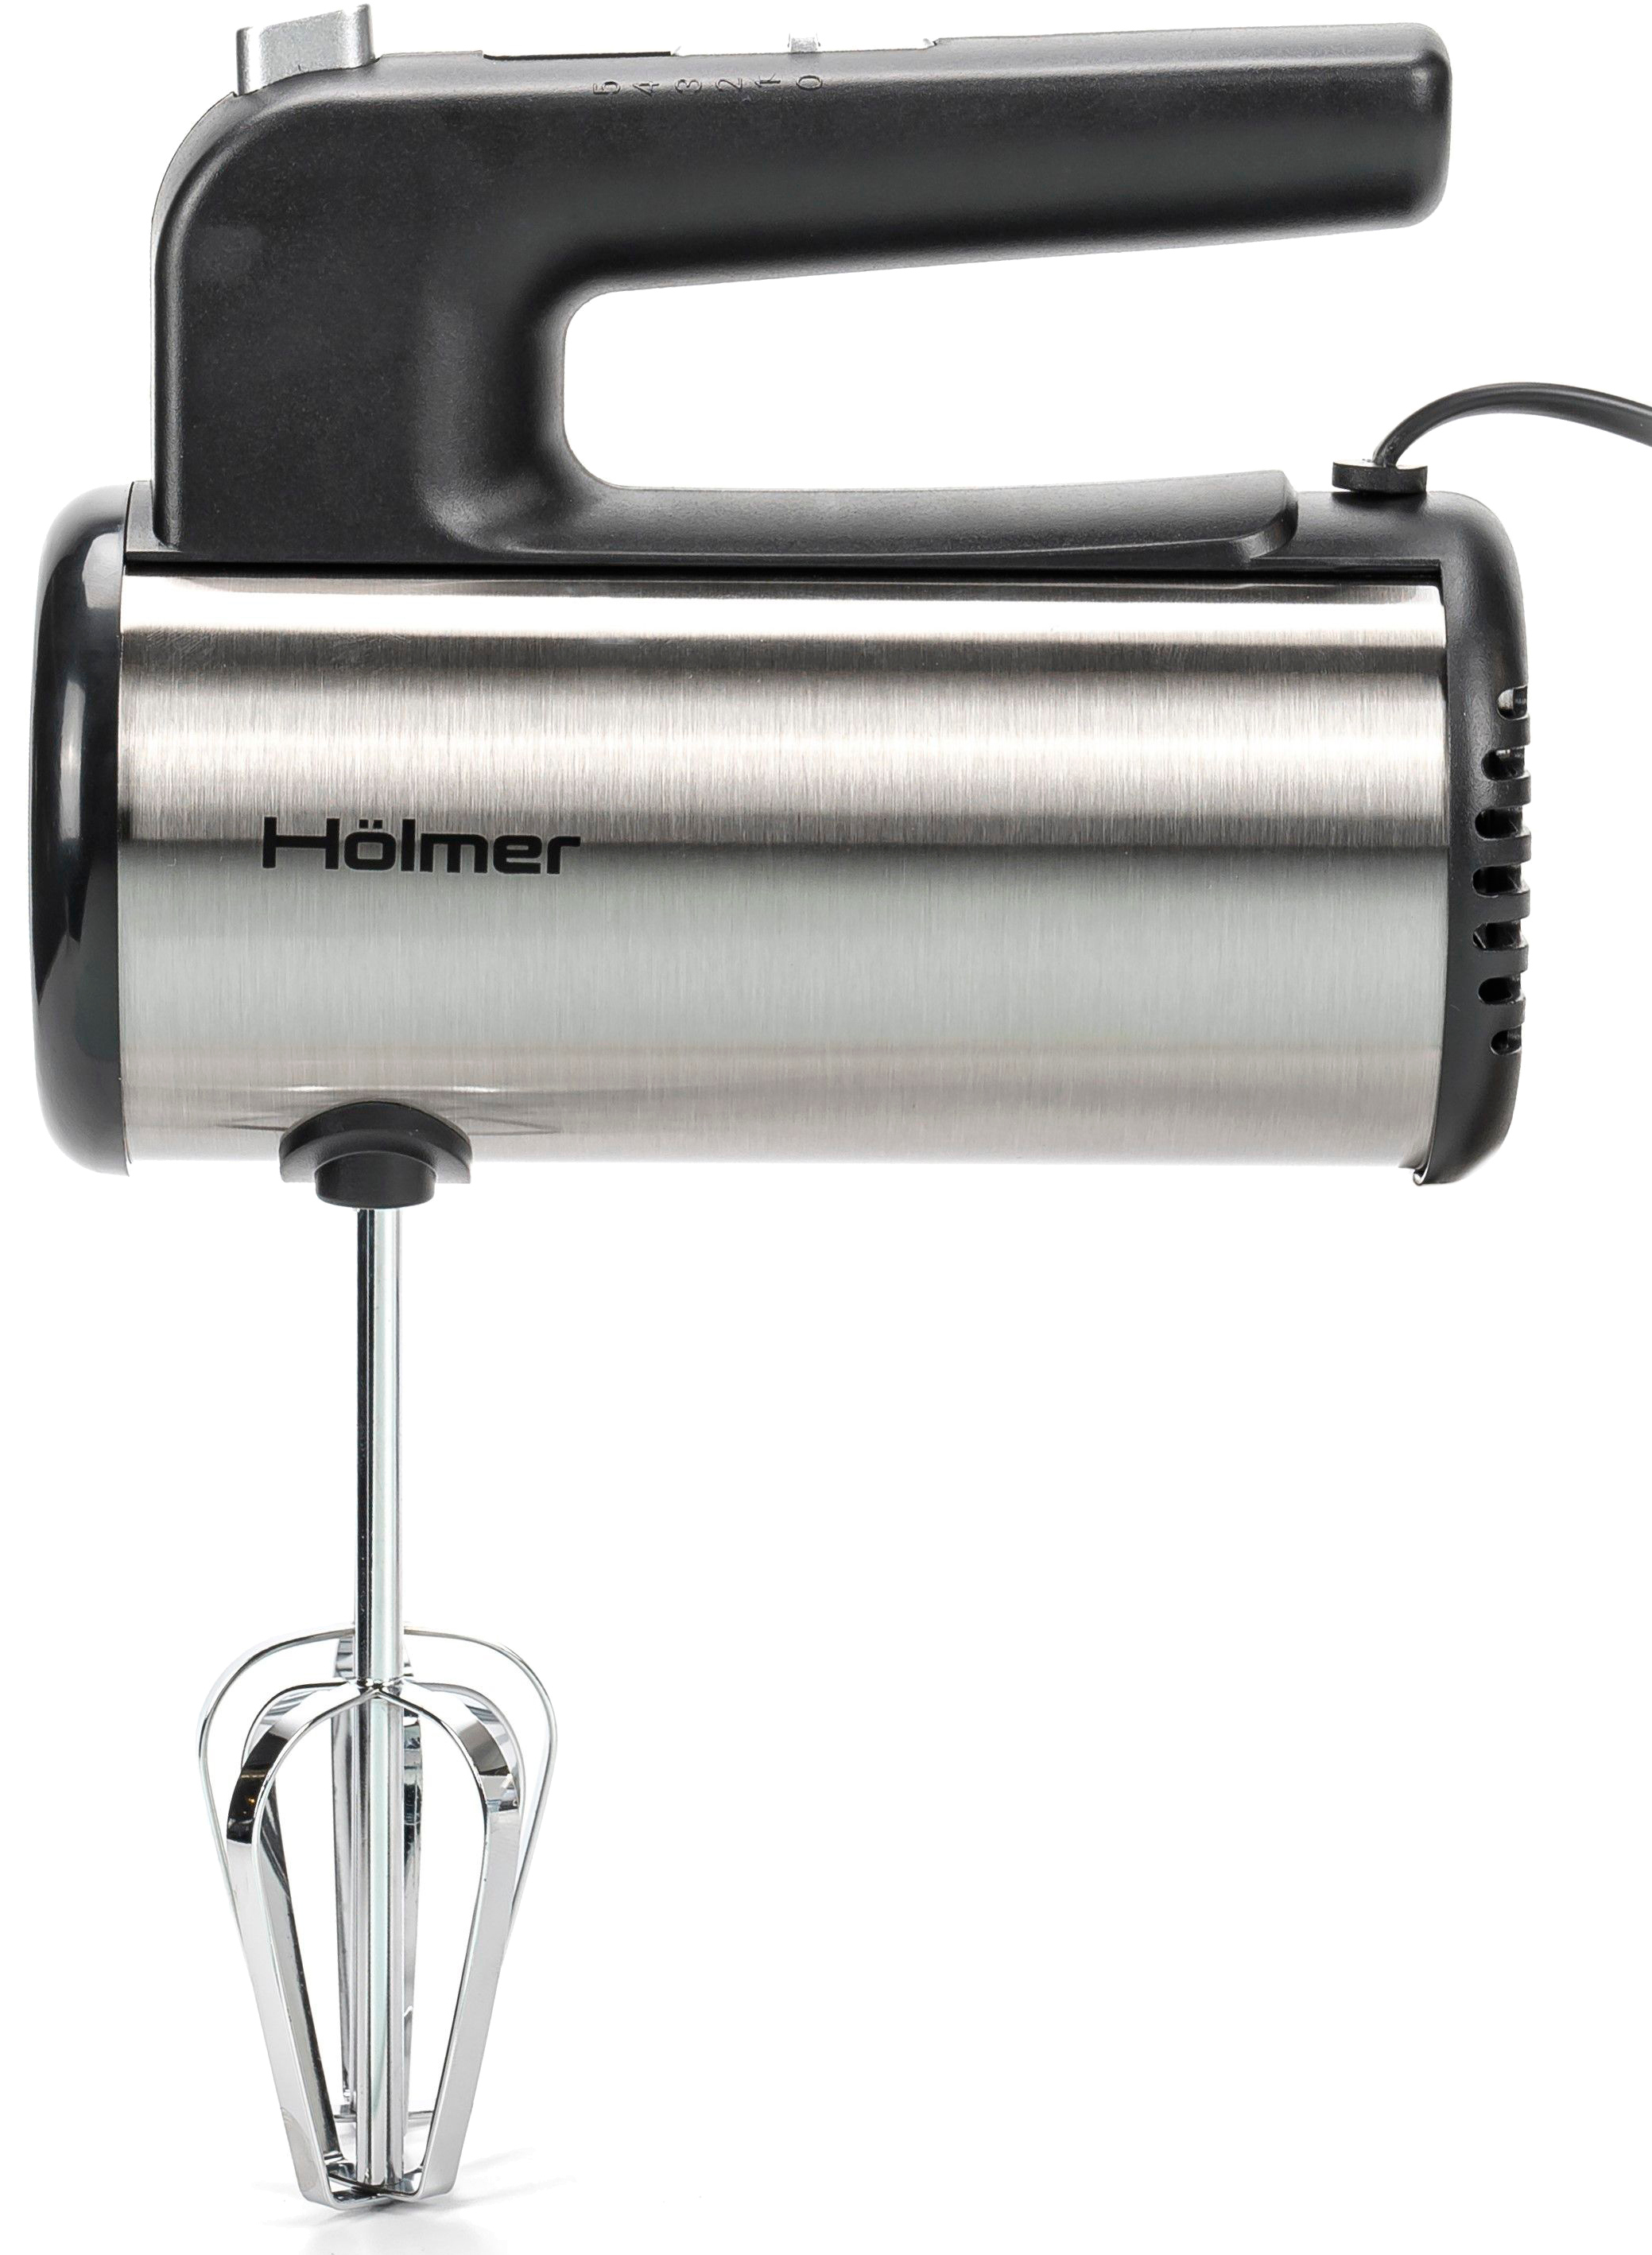 Holmer HHM-45